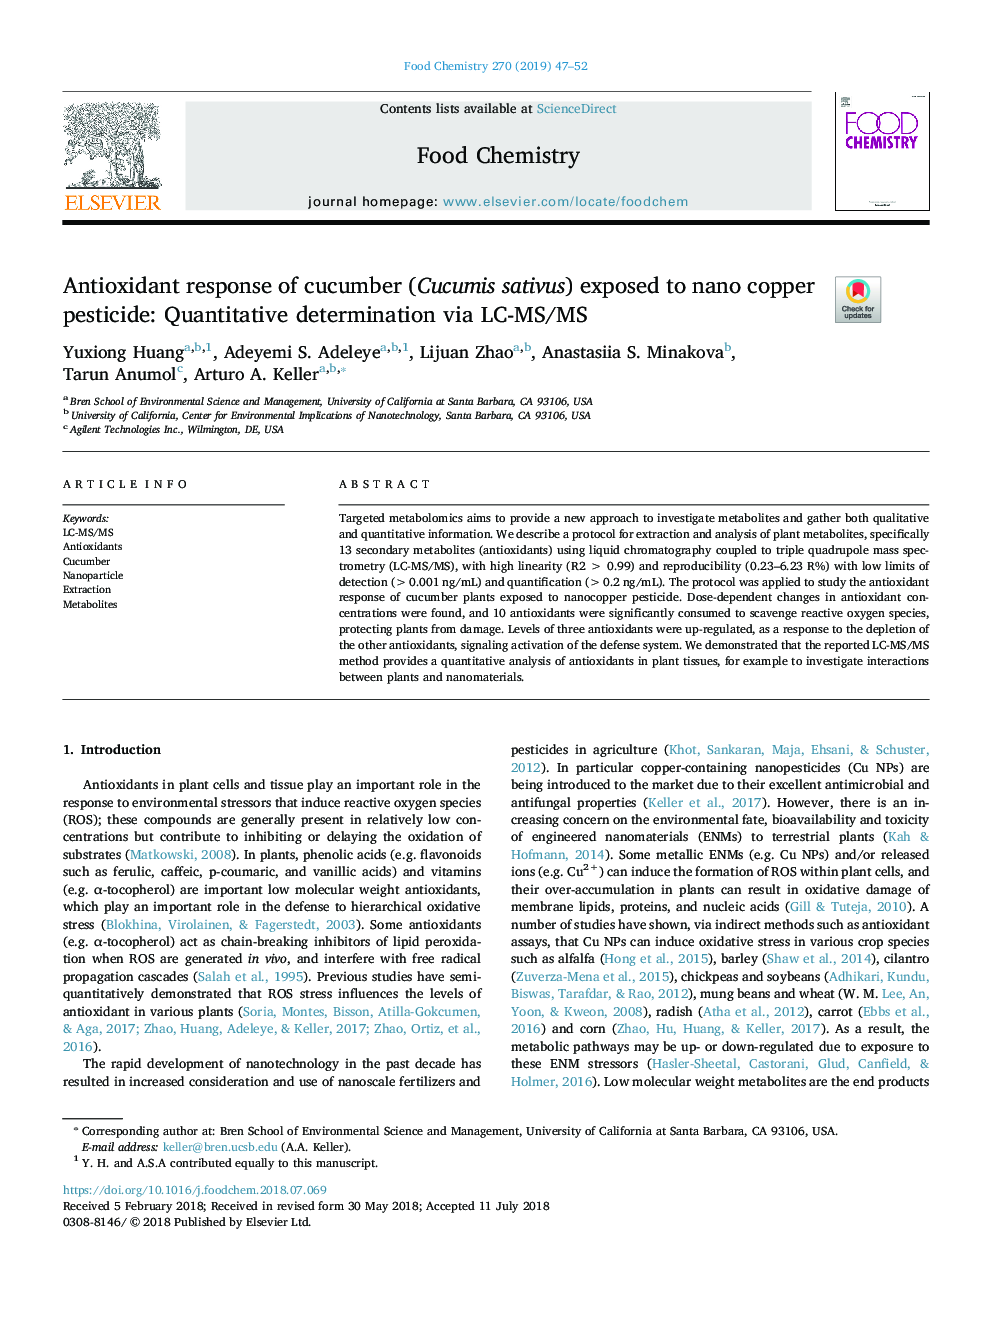 Antioxidant response of cucumber (Cucumis sativus) exposed to nano copper pesticide: Quantitative determination via LC-MS/MS